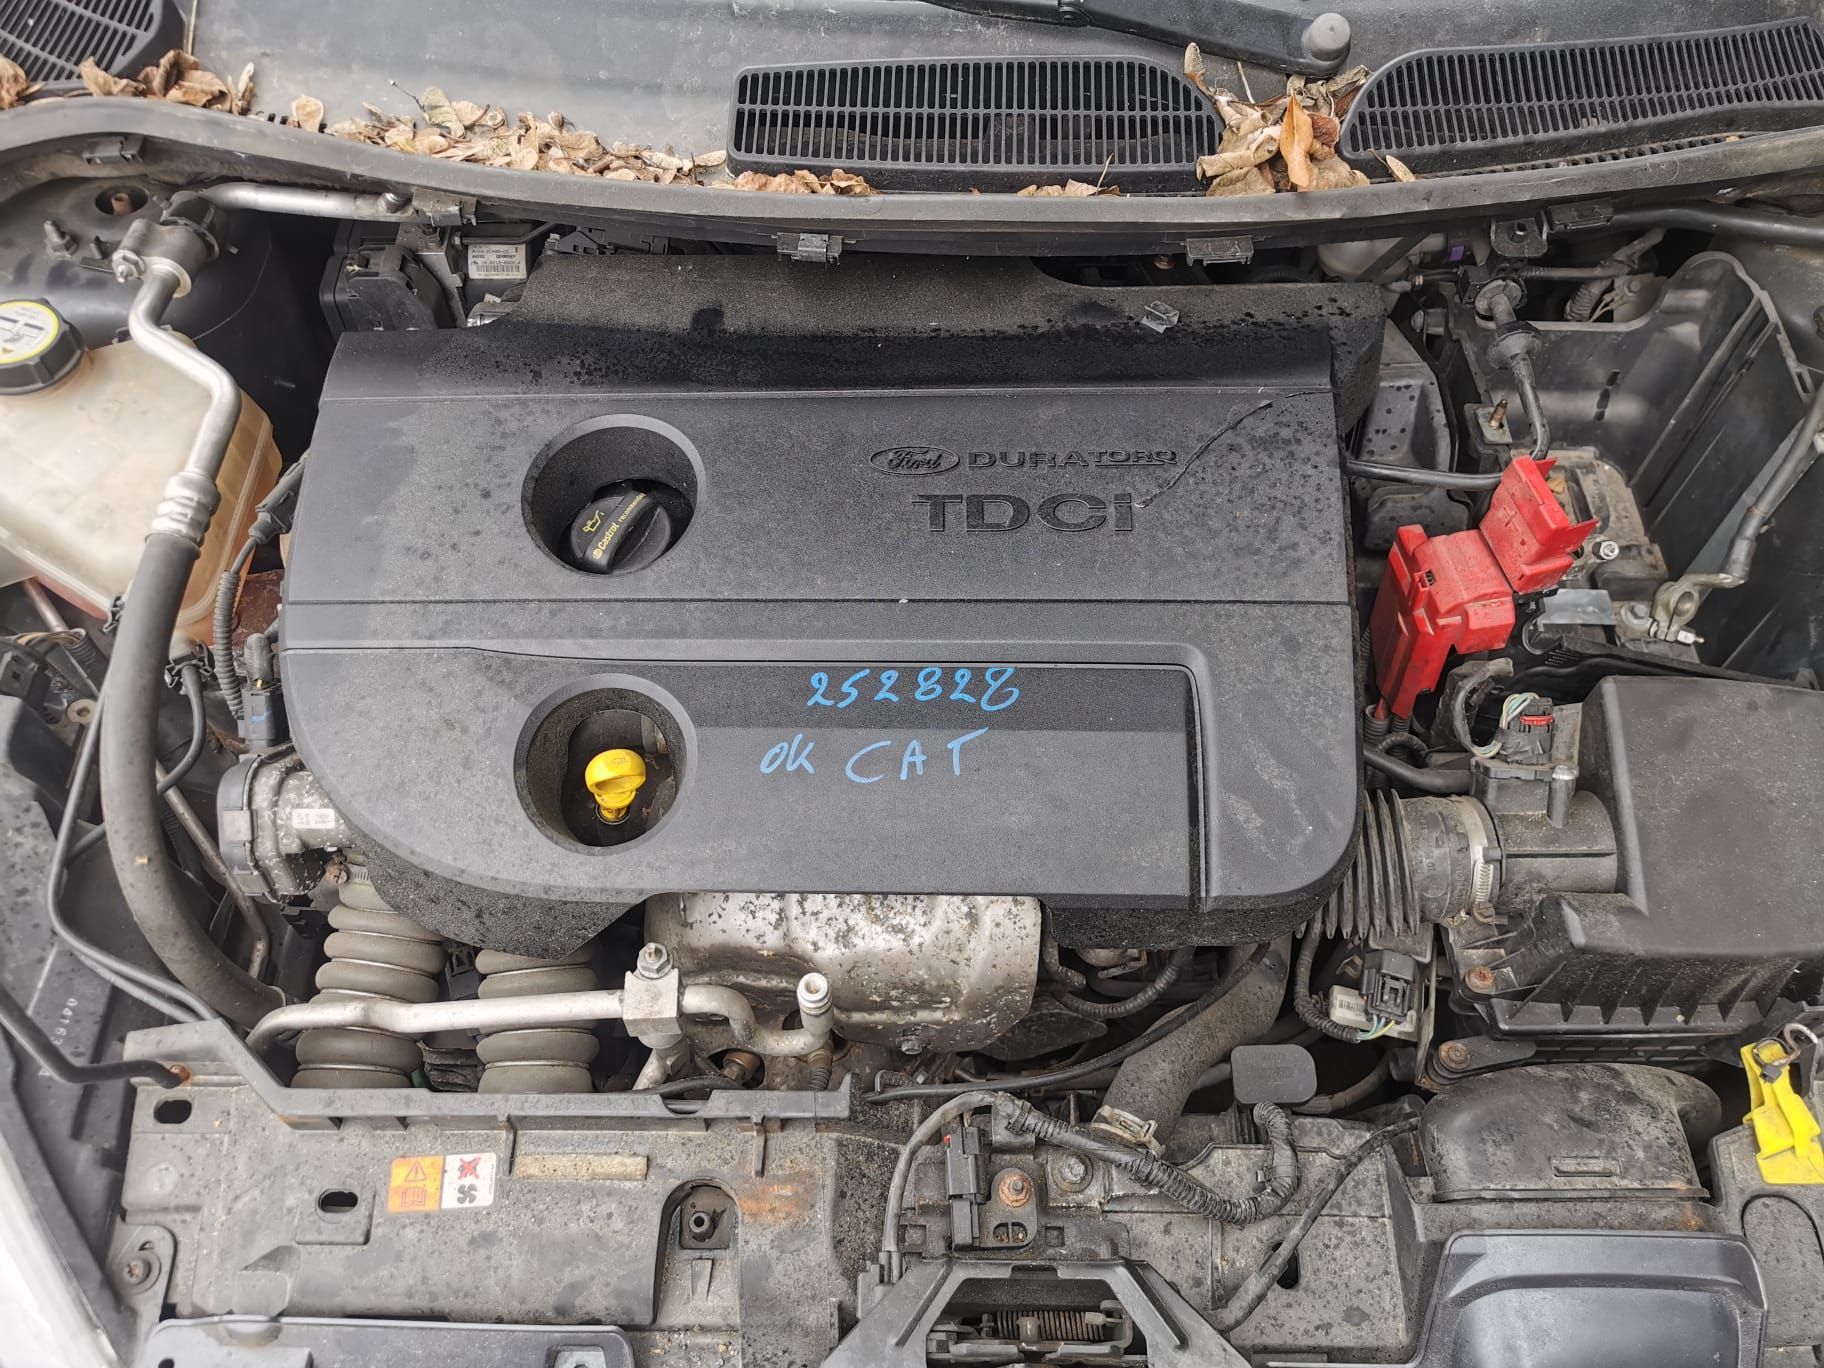 Б/У 1716693 Заслонка дроссельная Ford Fiesta 6 (2008-2019) электро Проверочный срок устанавливается bu6a1869976 Б/У запчасти